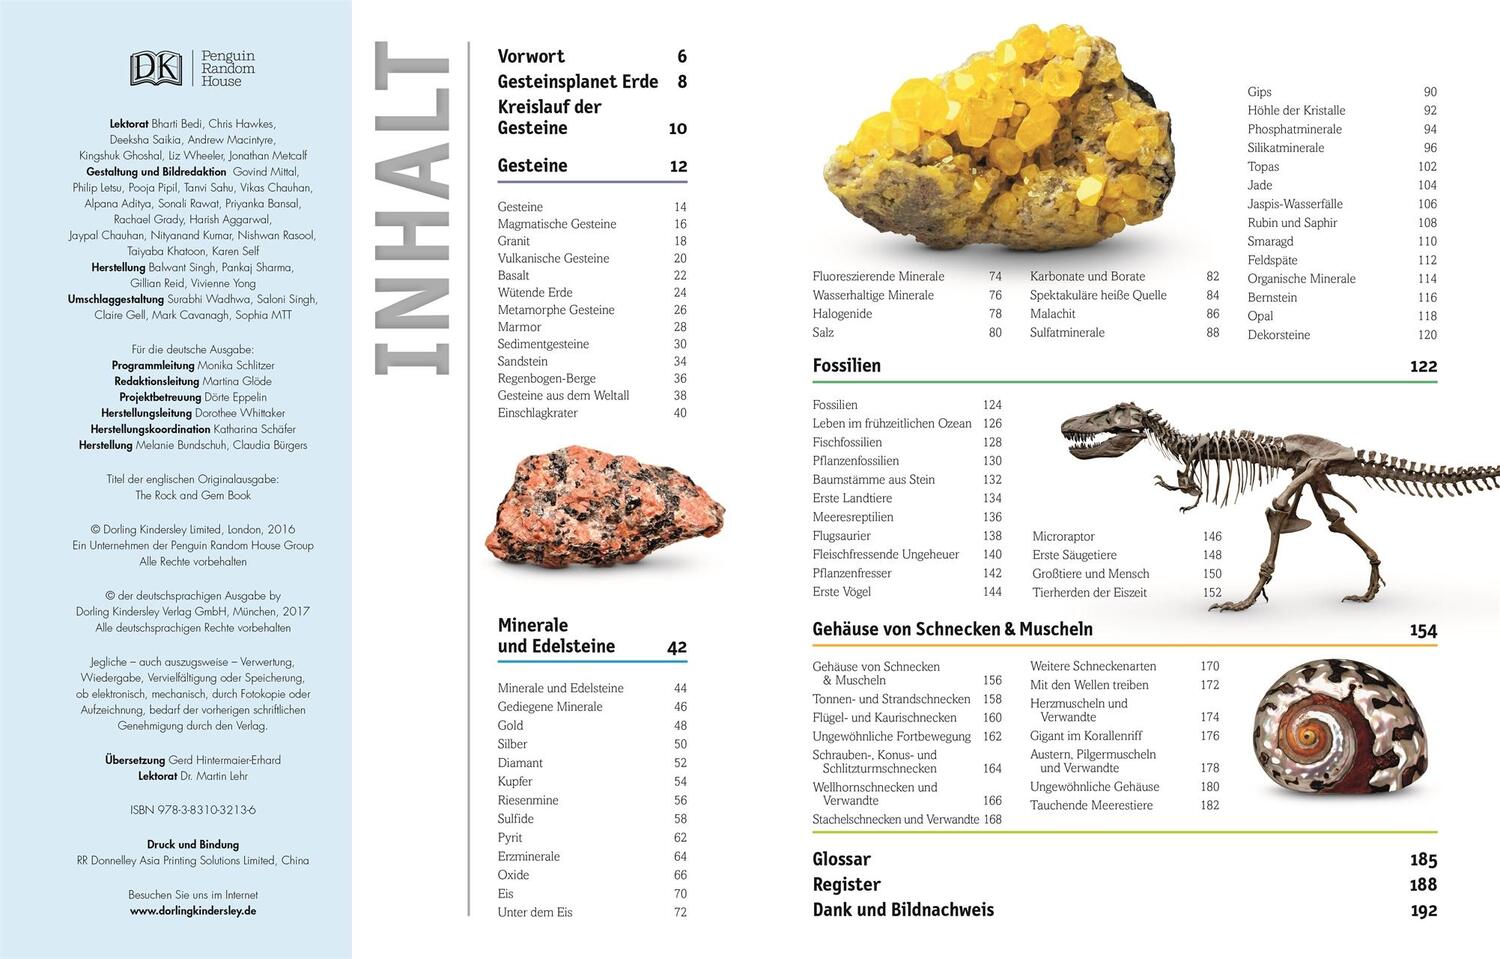 Bild: 9783831032136 | Steine | Minerale, Edelsteine und Fossilien in über 1000 Bildern